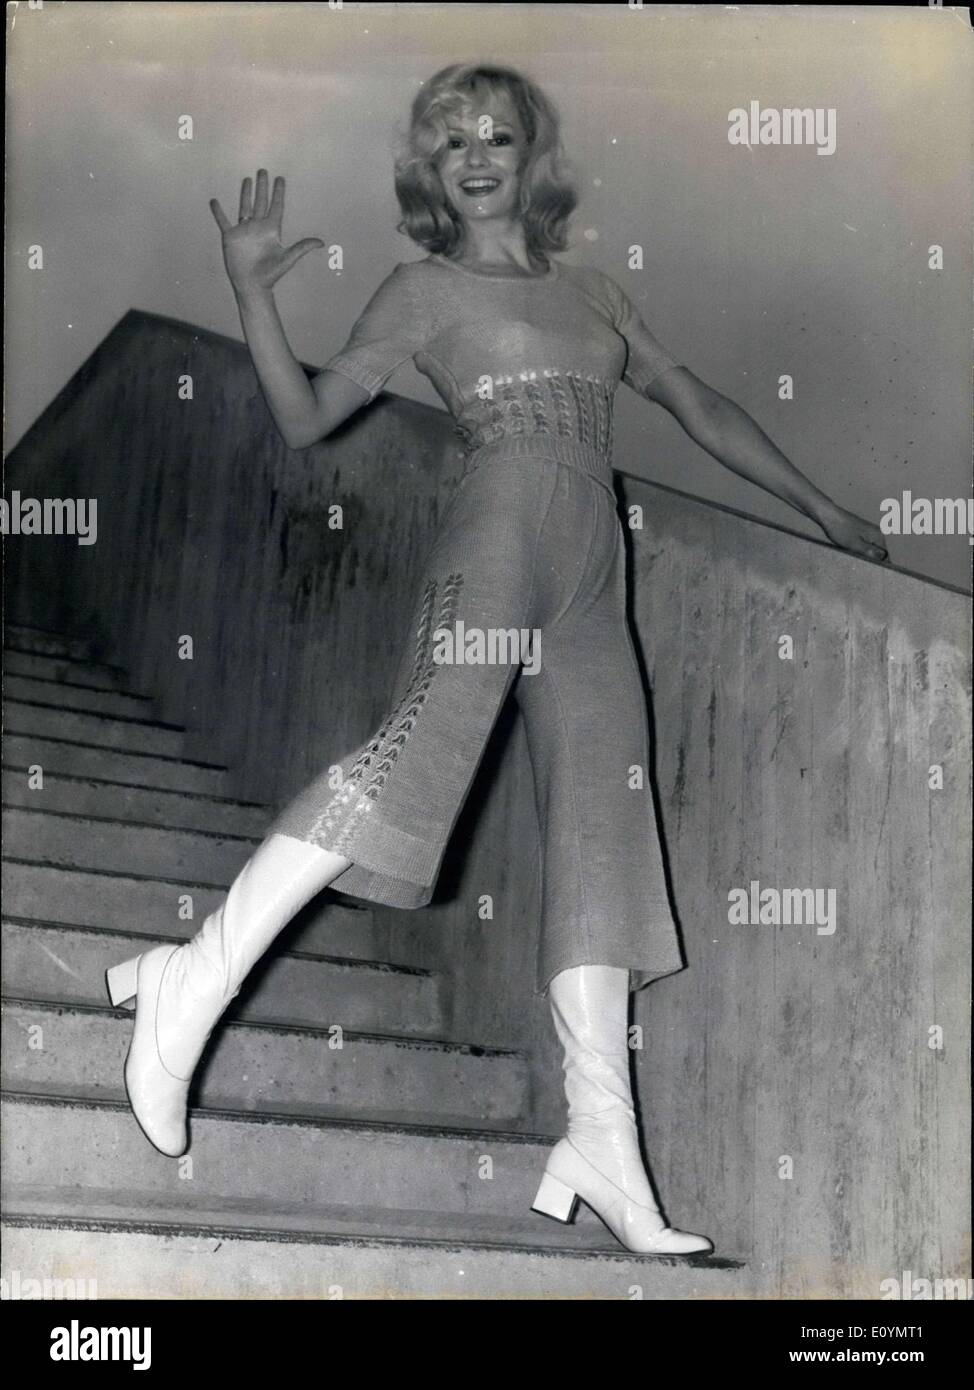 Ottobre 19, 1970 - Questo costume è uno dei disegni che viene presentato al ready-to-wear mostra che è attualmente presso la Porte de Versailles. I pantaloni sono accoppiati con il bianco stivali e un mini-maglione in lino. Foto Stock